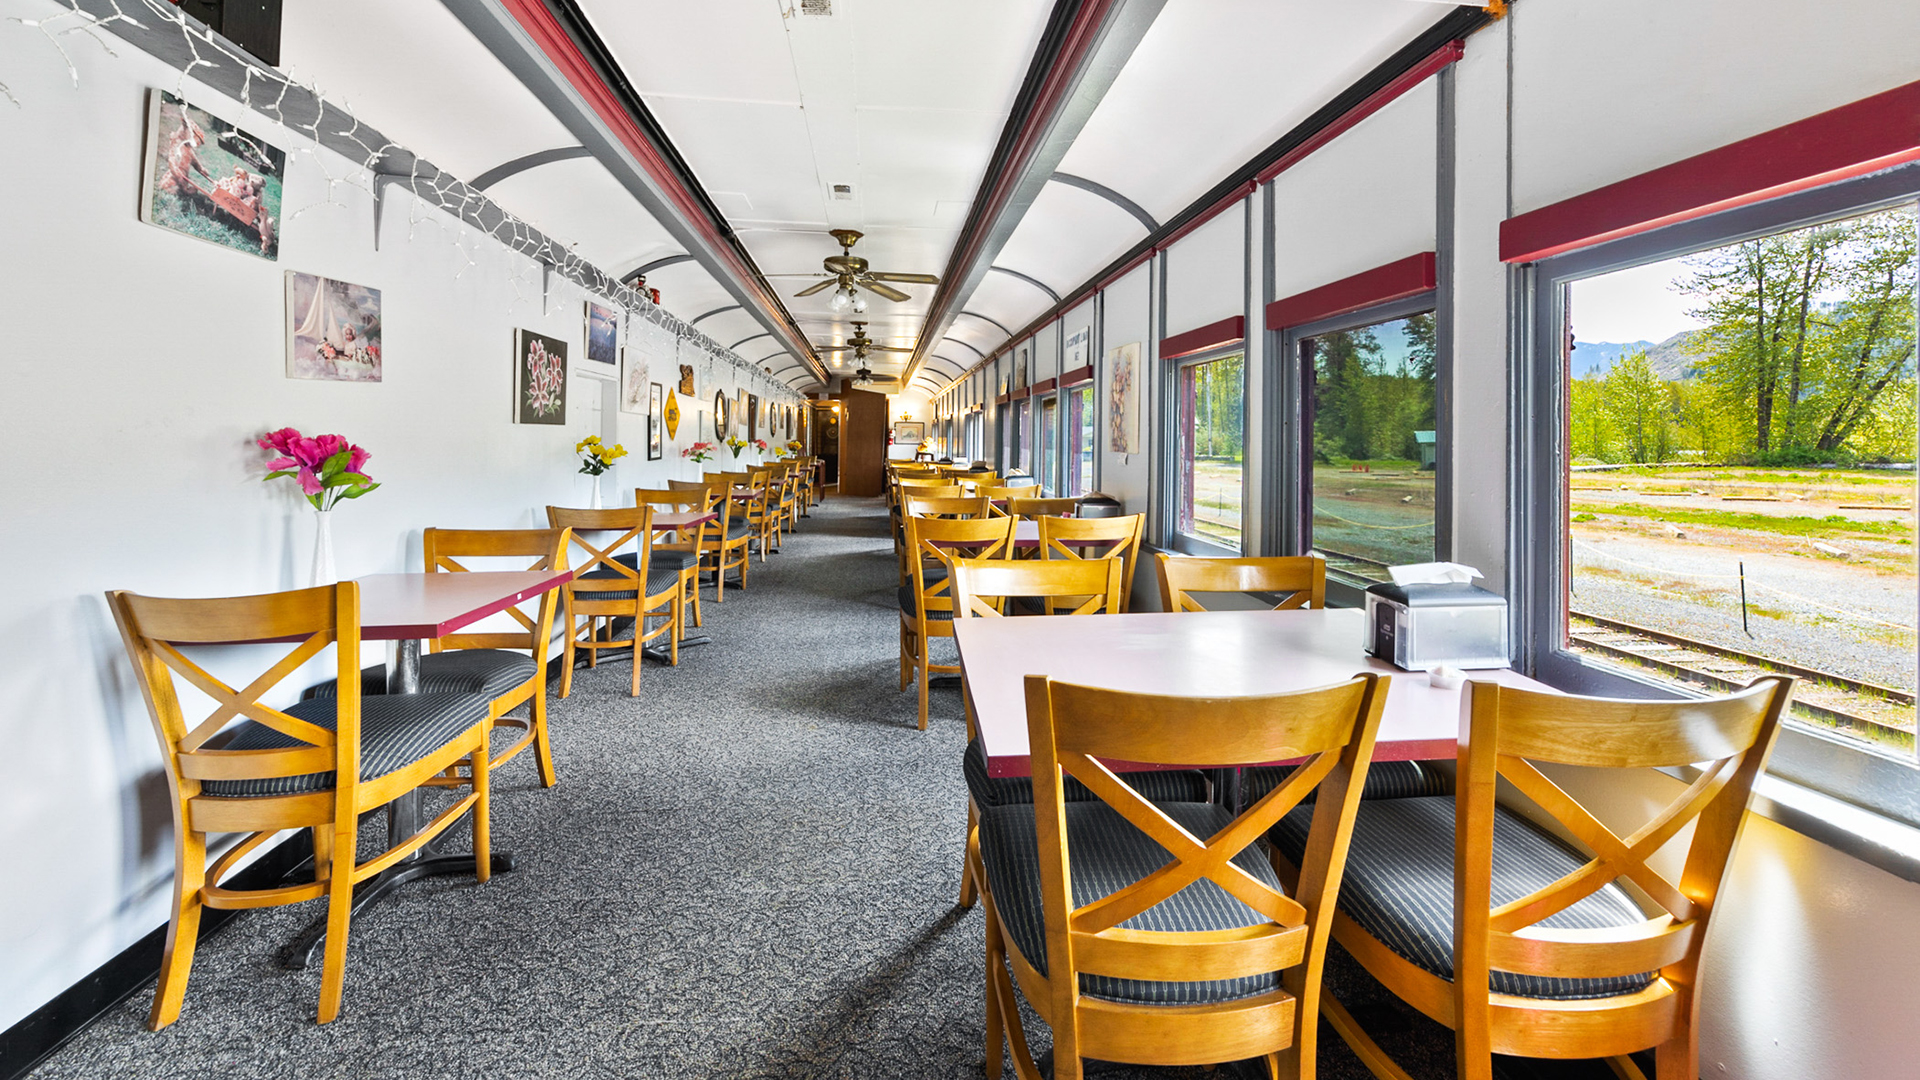 Mt. Rainier Railroad Diner